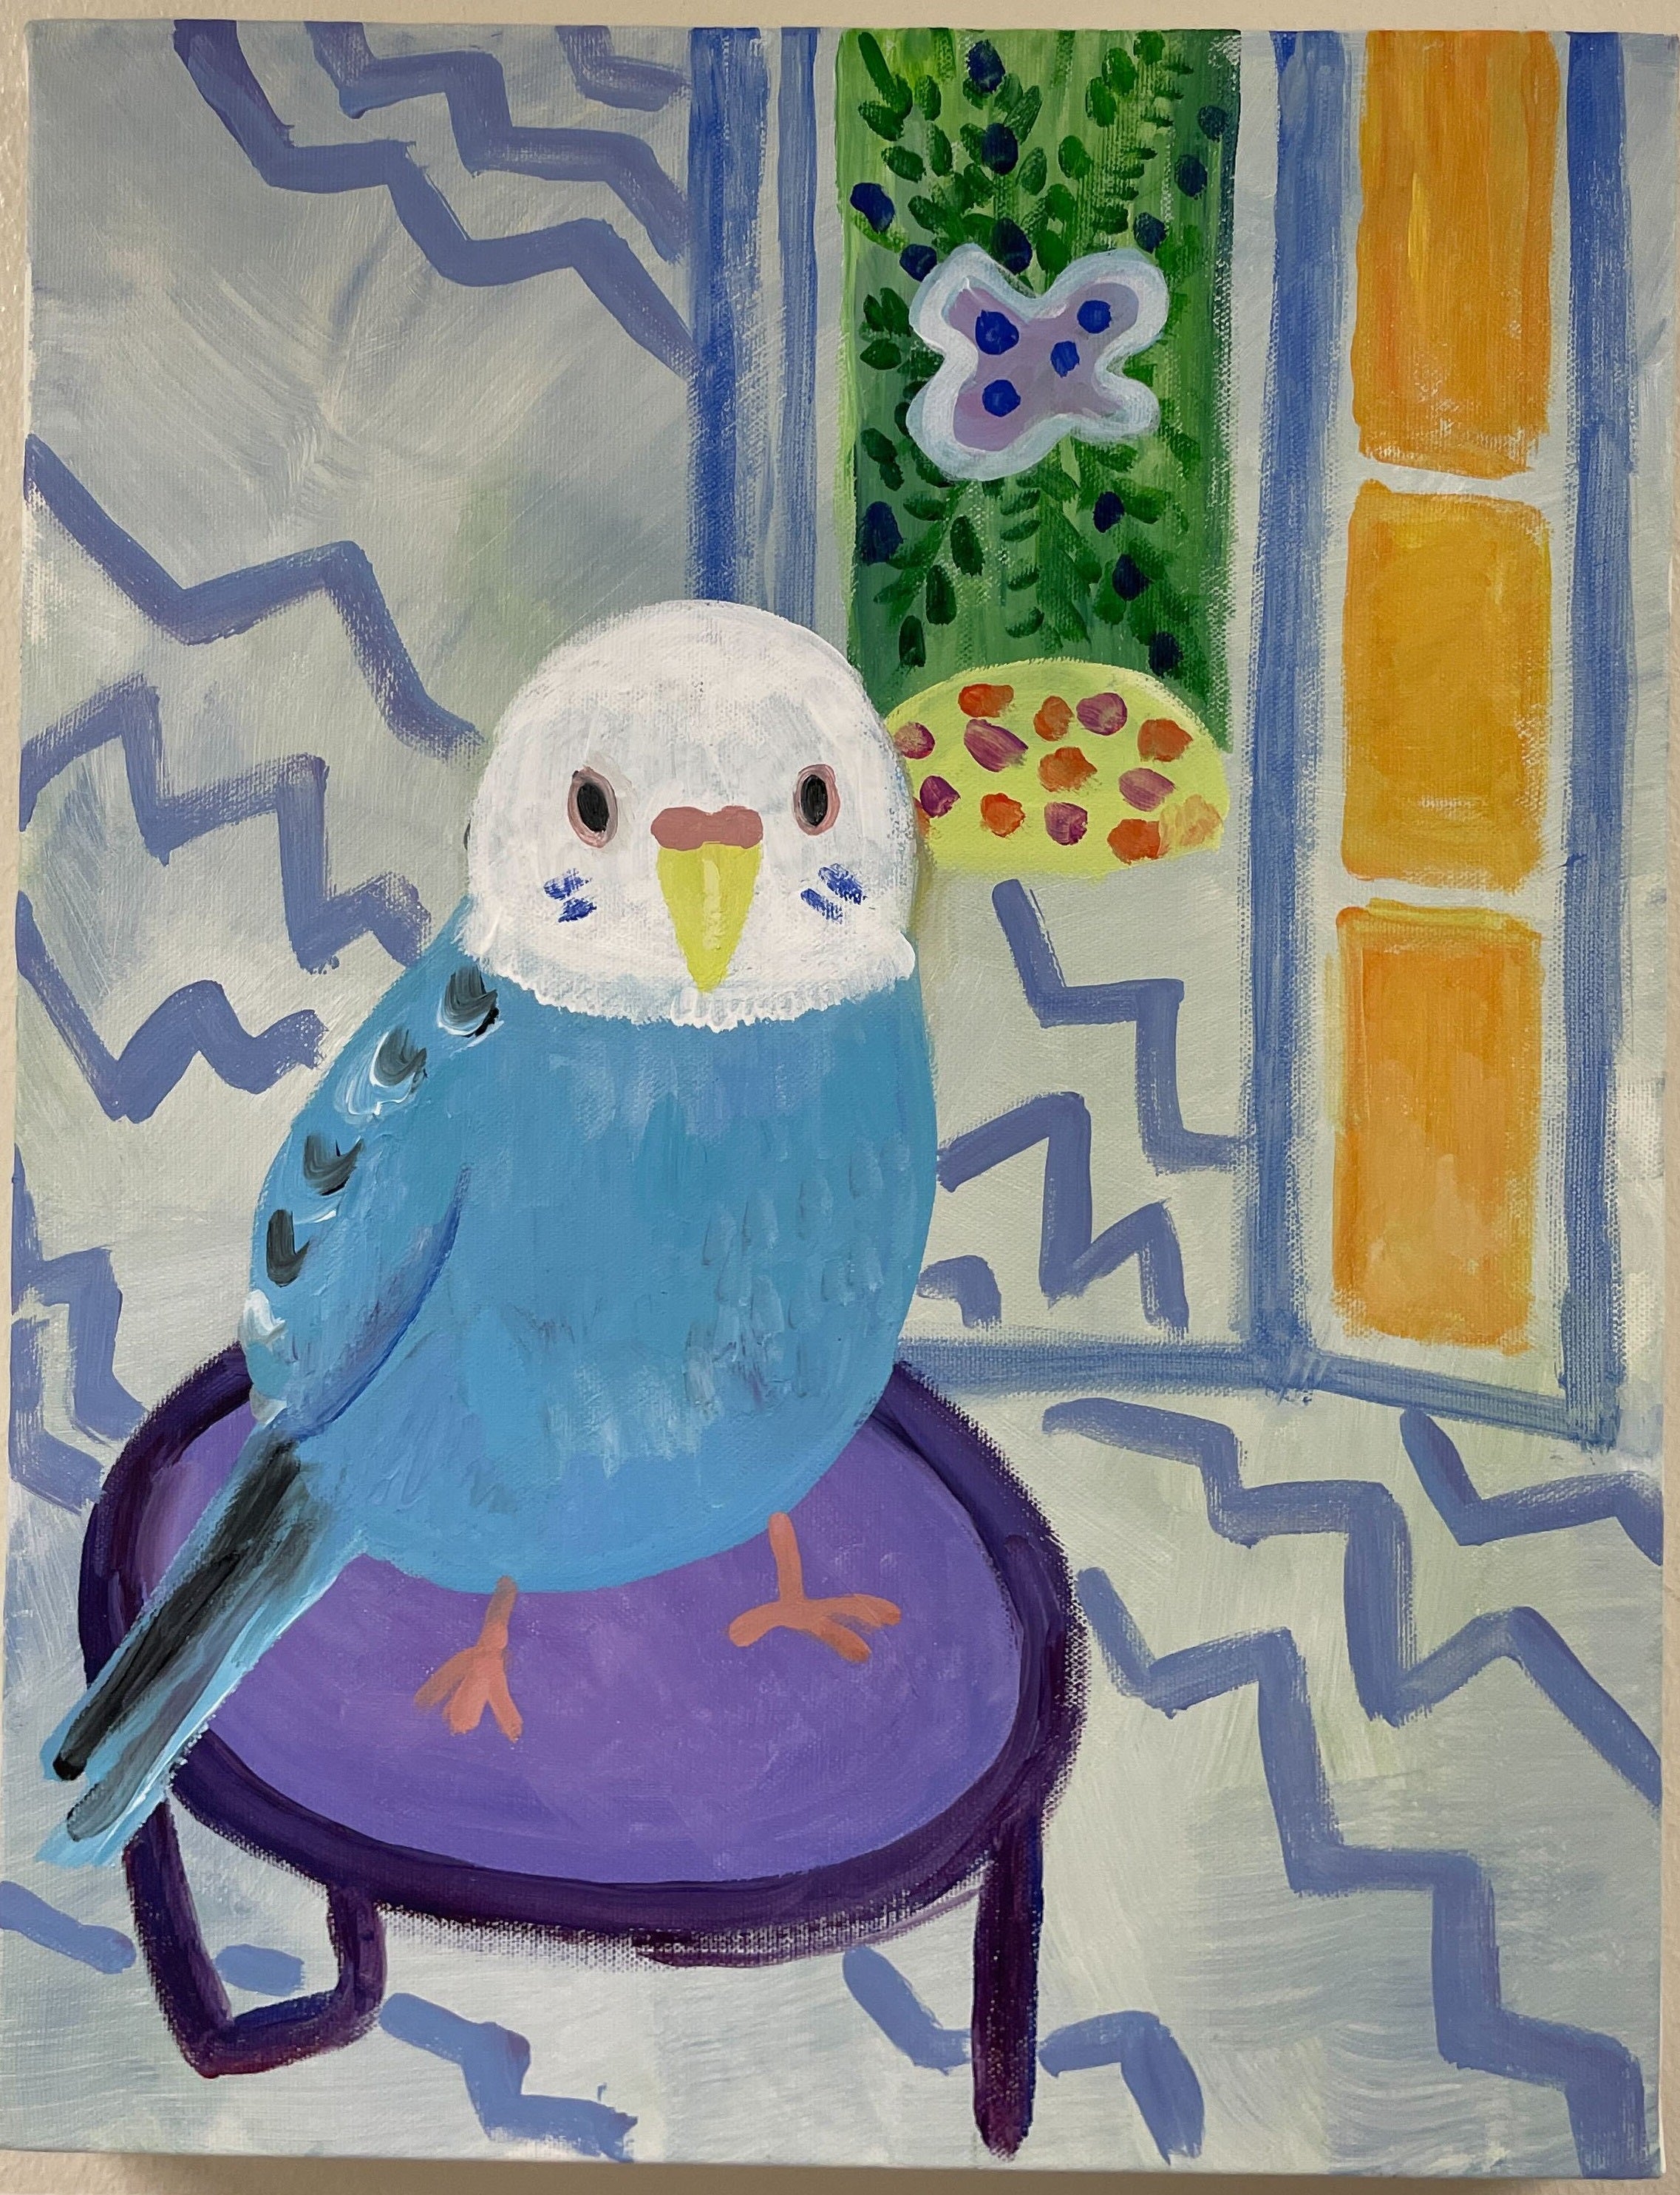 【上野/根津】10月13日(金) 19:00-21:30 | マティス風・猫の絵（Matisse-Style Animal Painting at Ueno/Nezu）